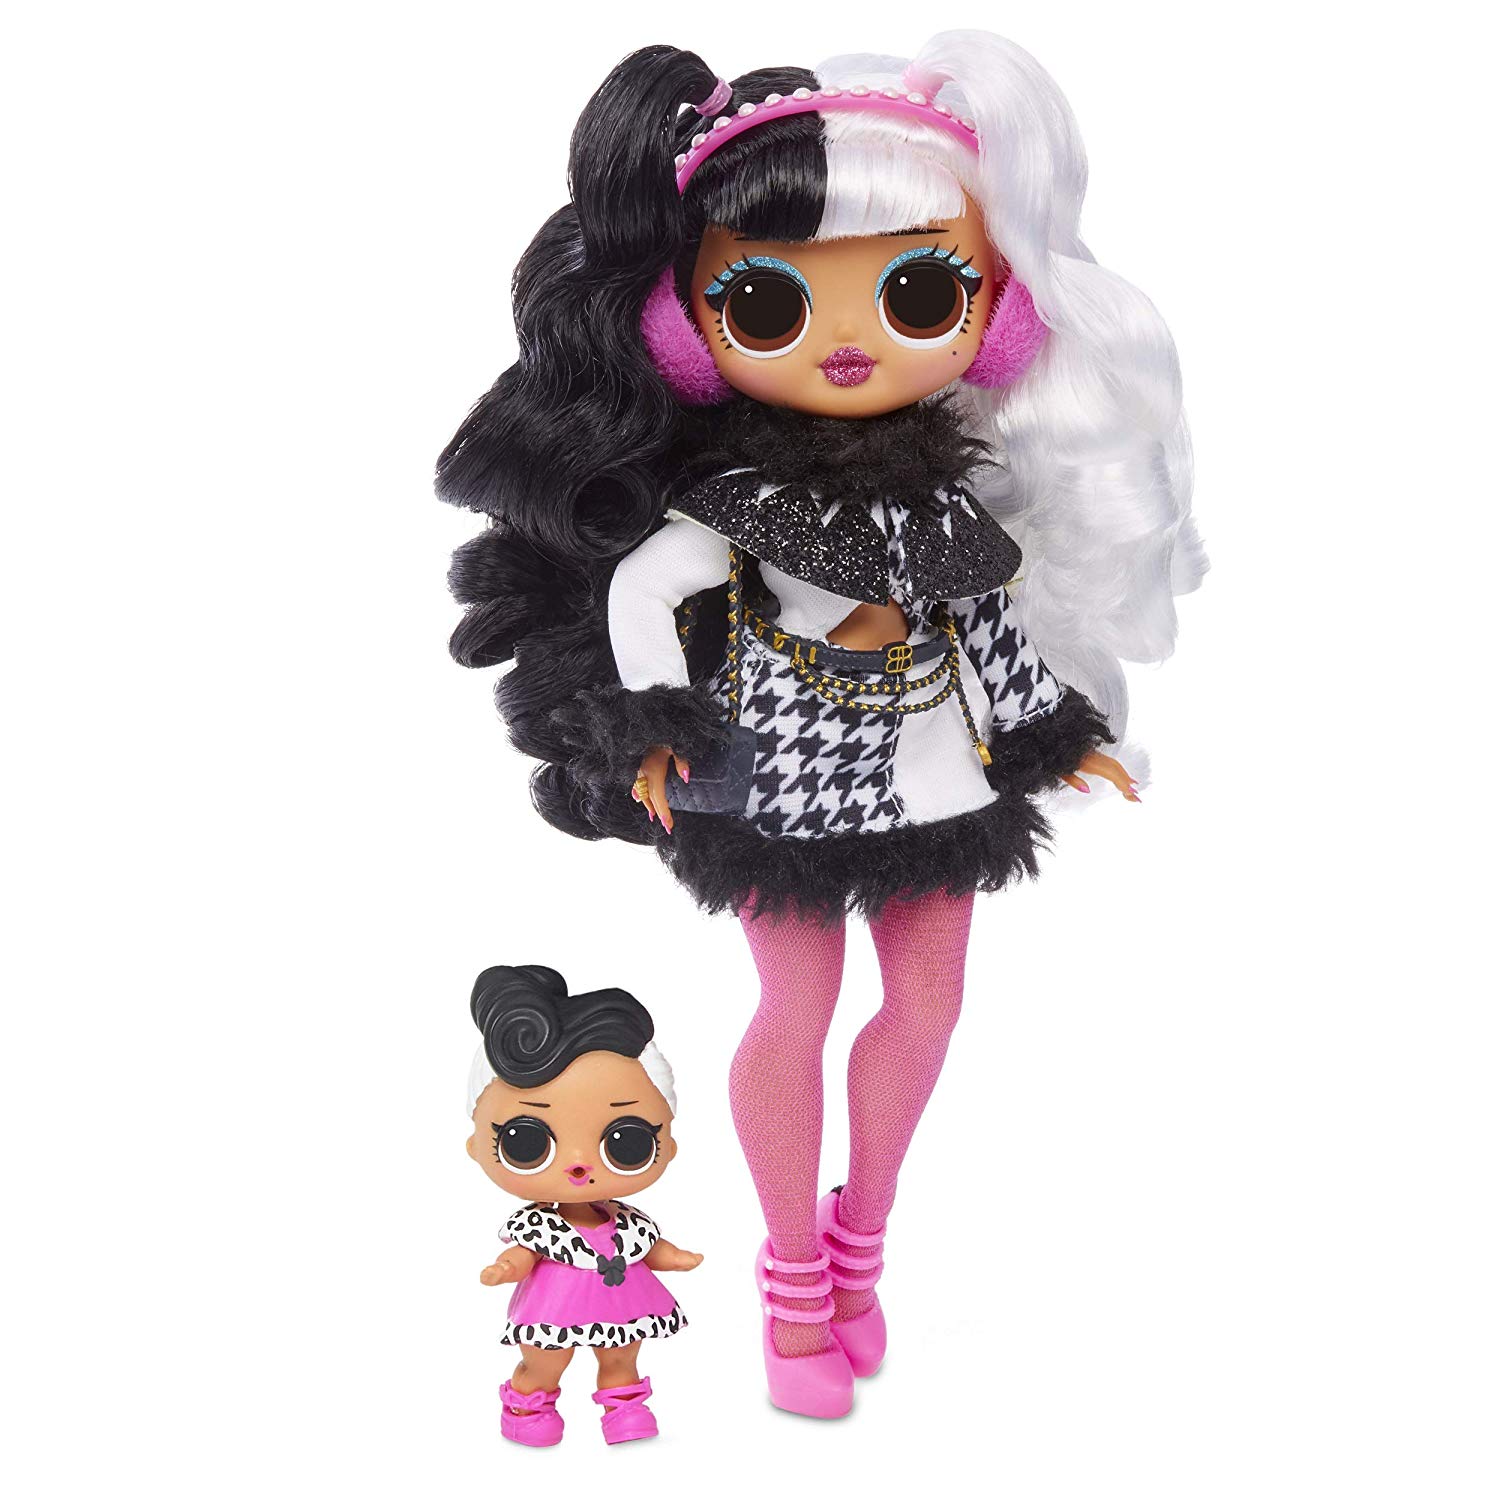 Куклы OMG «Winter Disco Fashion Dolls Cosmic Nova» 4 вида BB885